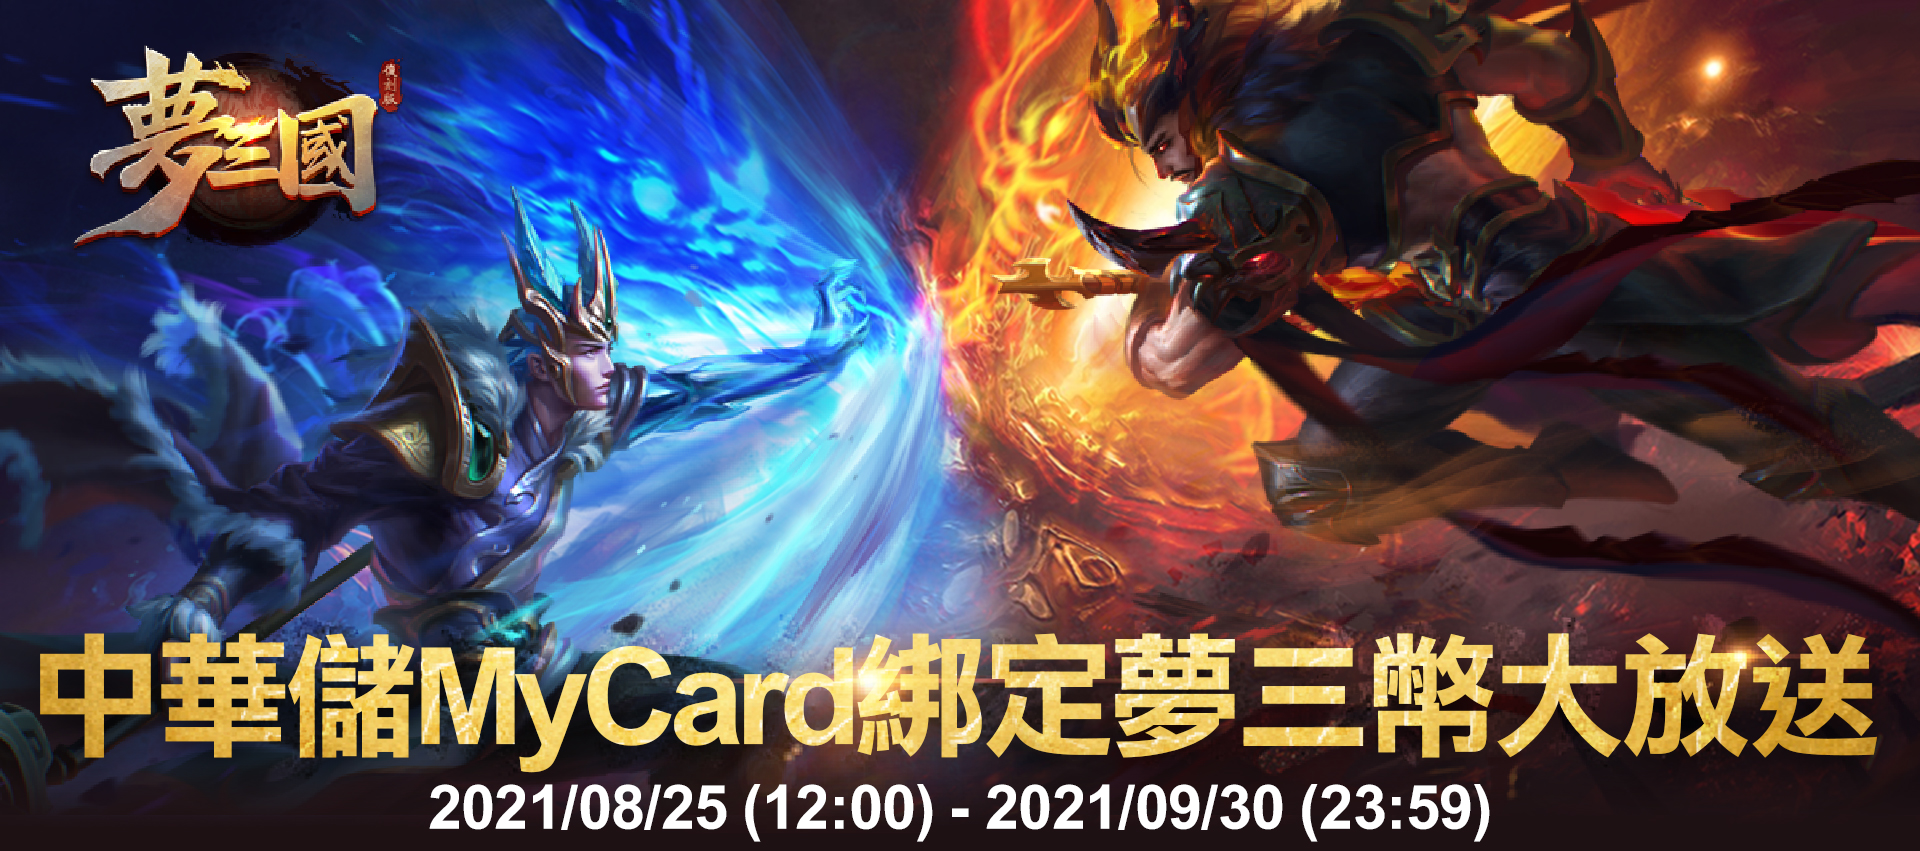   《夢三國復刻版》MyCard儲值夢三幣大放送 | 中華